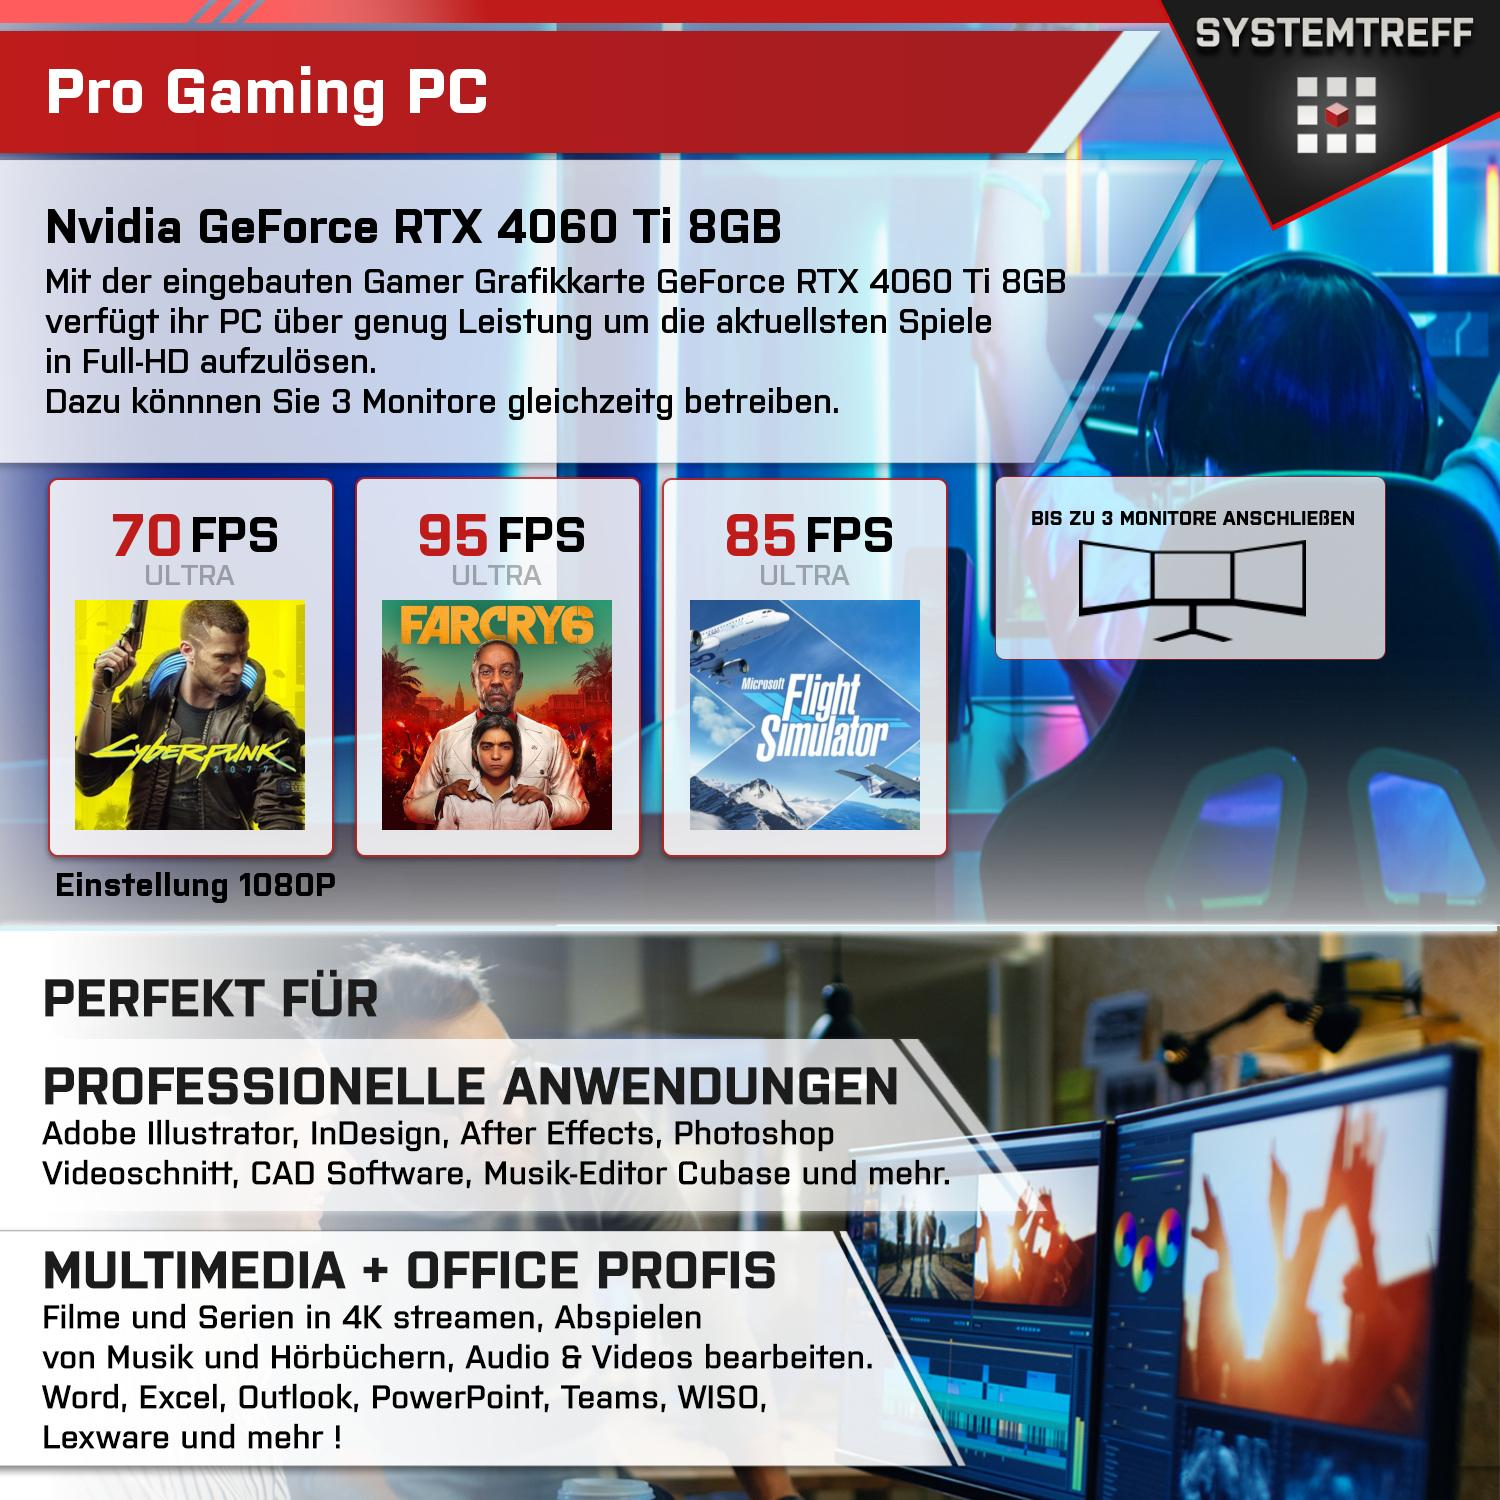 SYSTEMTREFF Gaming Komplett AMD Ryzen Prozessor, GB 16 GeForce DLSS 5600X mit 3, 8 GB PC GDDR6 Komplett Nvidia 5 4060Ti mSSD, 512 RAM, GB mit 5600X, 8GB RTX